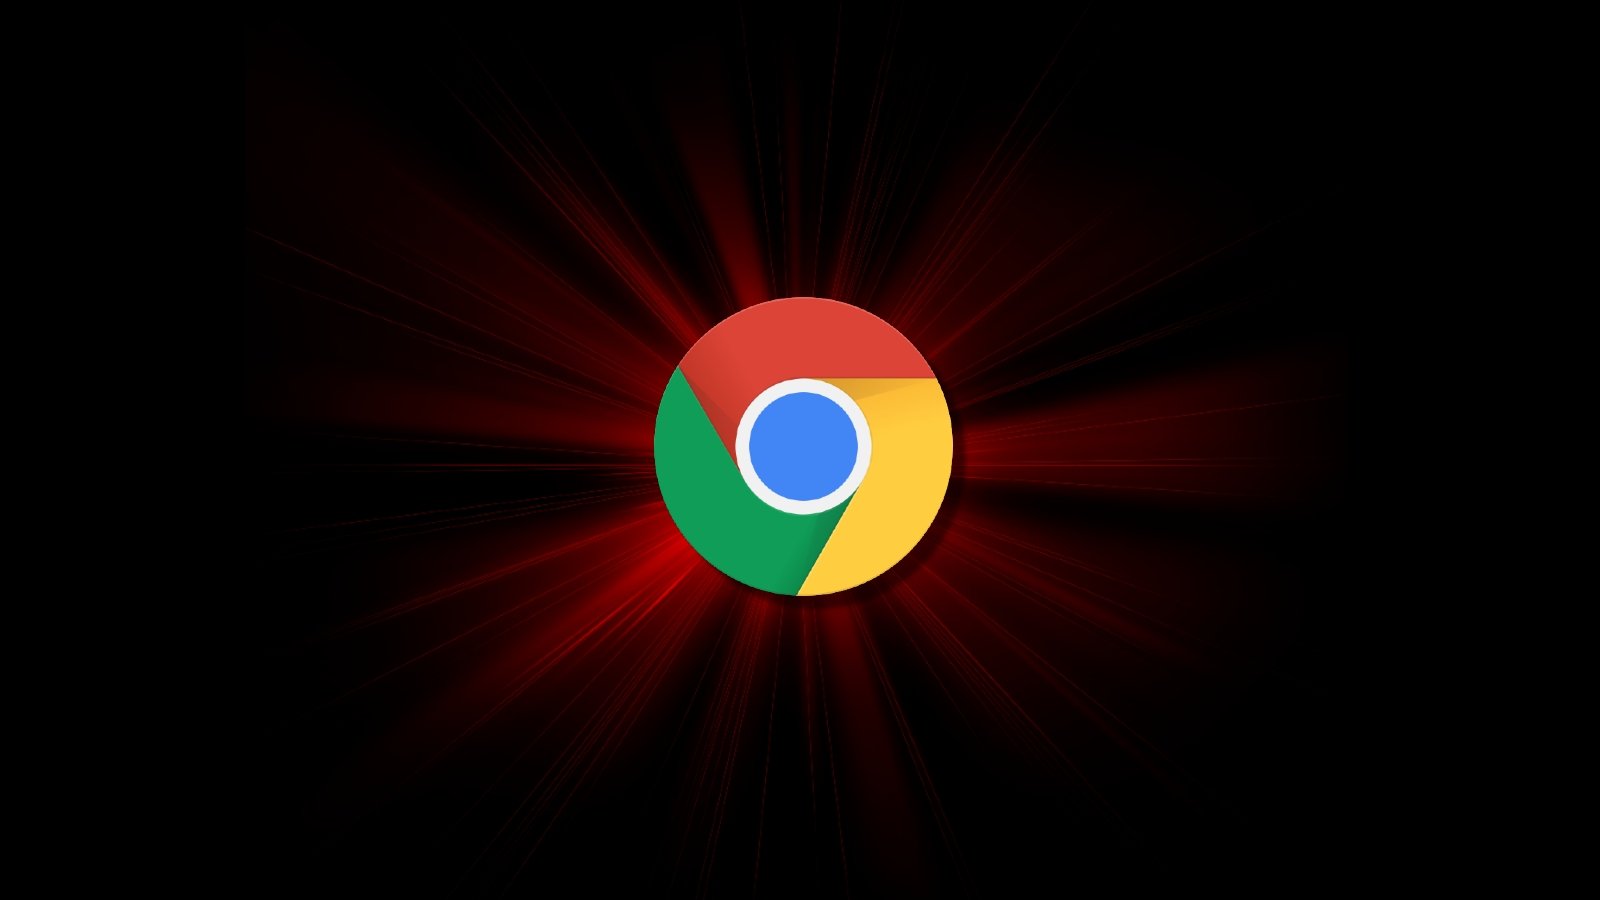 Kötü amaçlı uzantı, saldırganların Google Chrome’u uzaktan kontrol etmesine olanak tanır